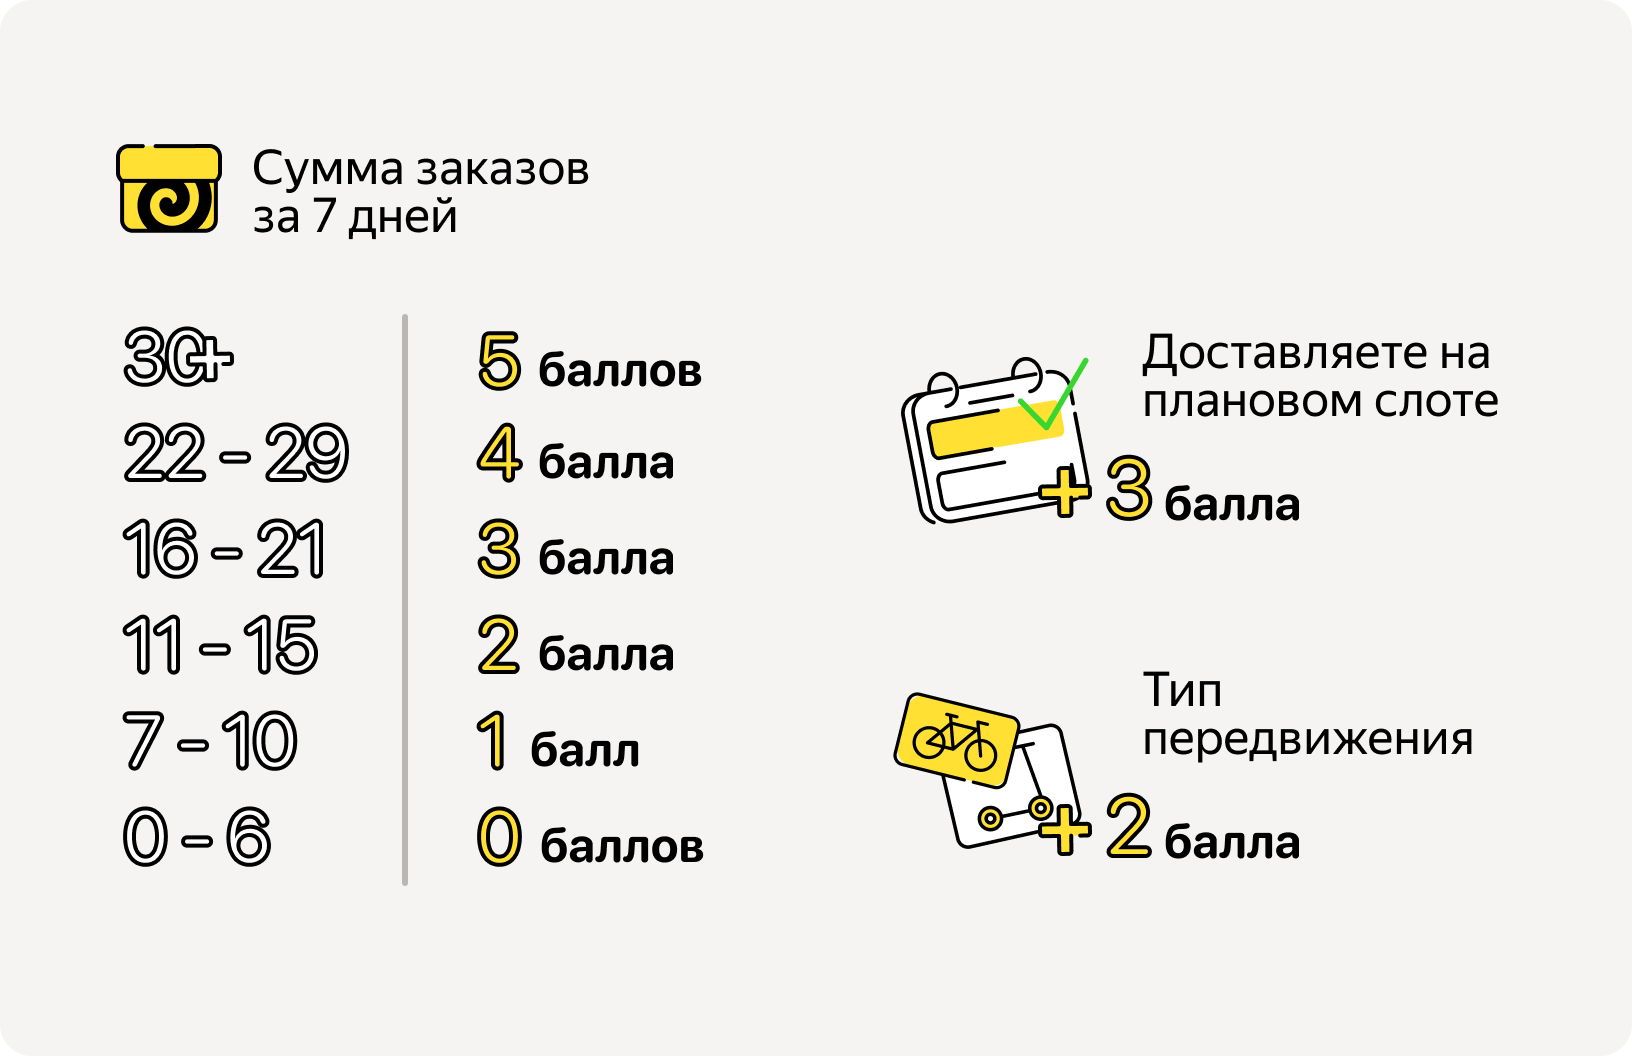 ℹ Эти показатели — придуманные и указаны в качестве примера. Не ориентируйтесь на них — узнать свои результаты и балл приоритета можно в Яндекс Про